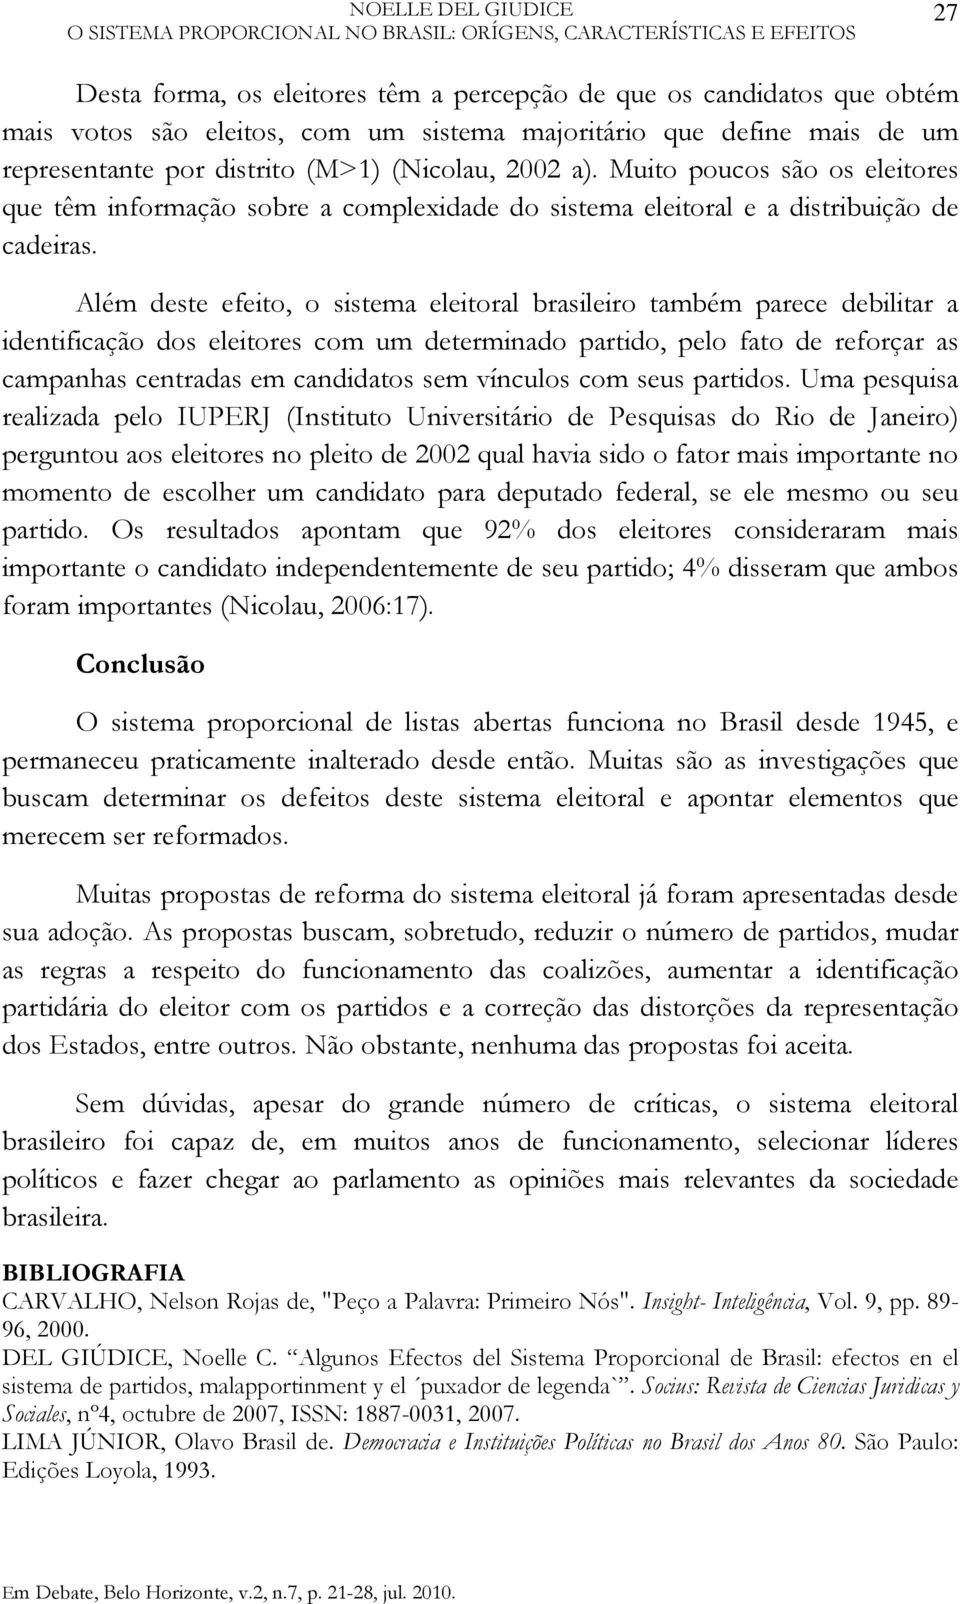 Além deste efeito, o sistema eleitoral brasileiro também parece debilitar a identificação dos eleitores com um determinado partido, pelo fato de reforçar as campanhas centradas em candidatos sem